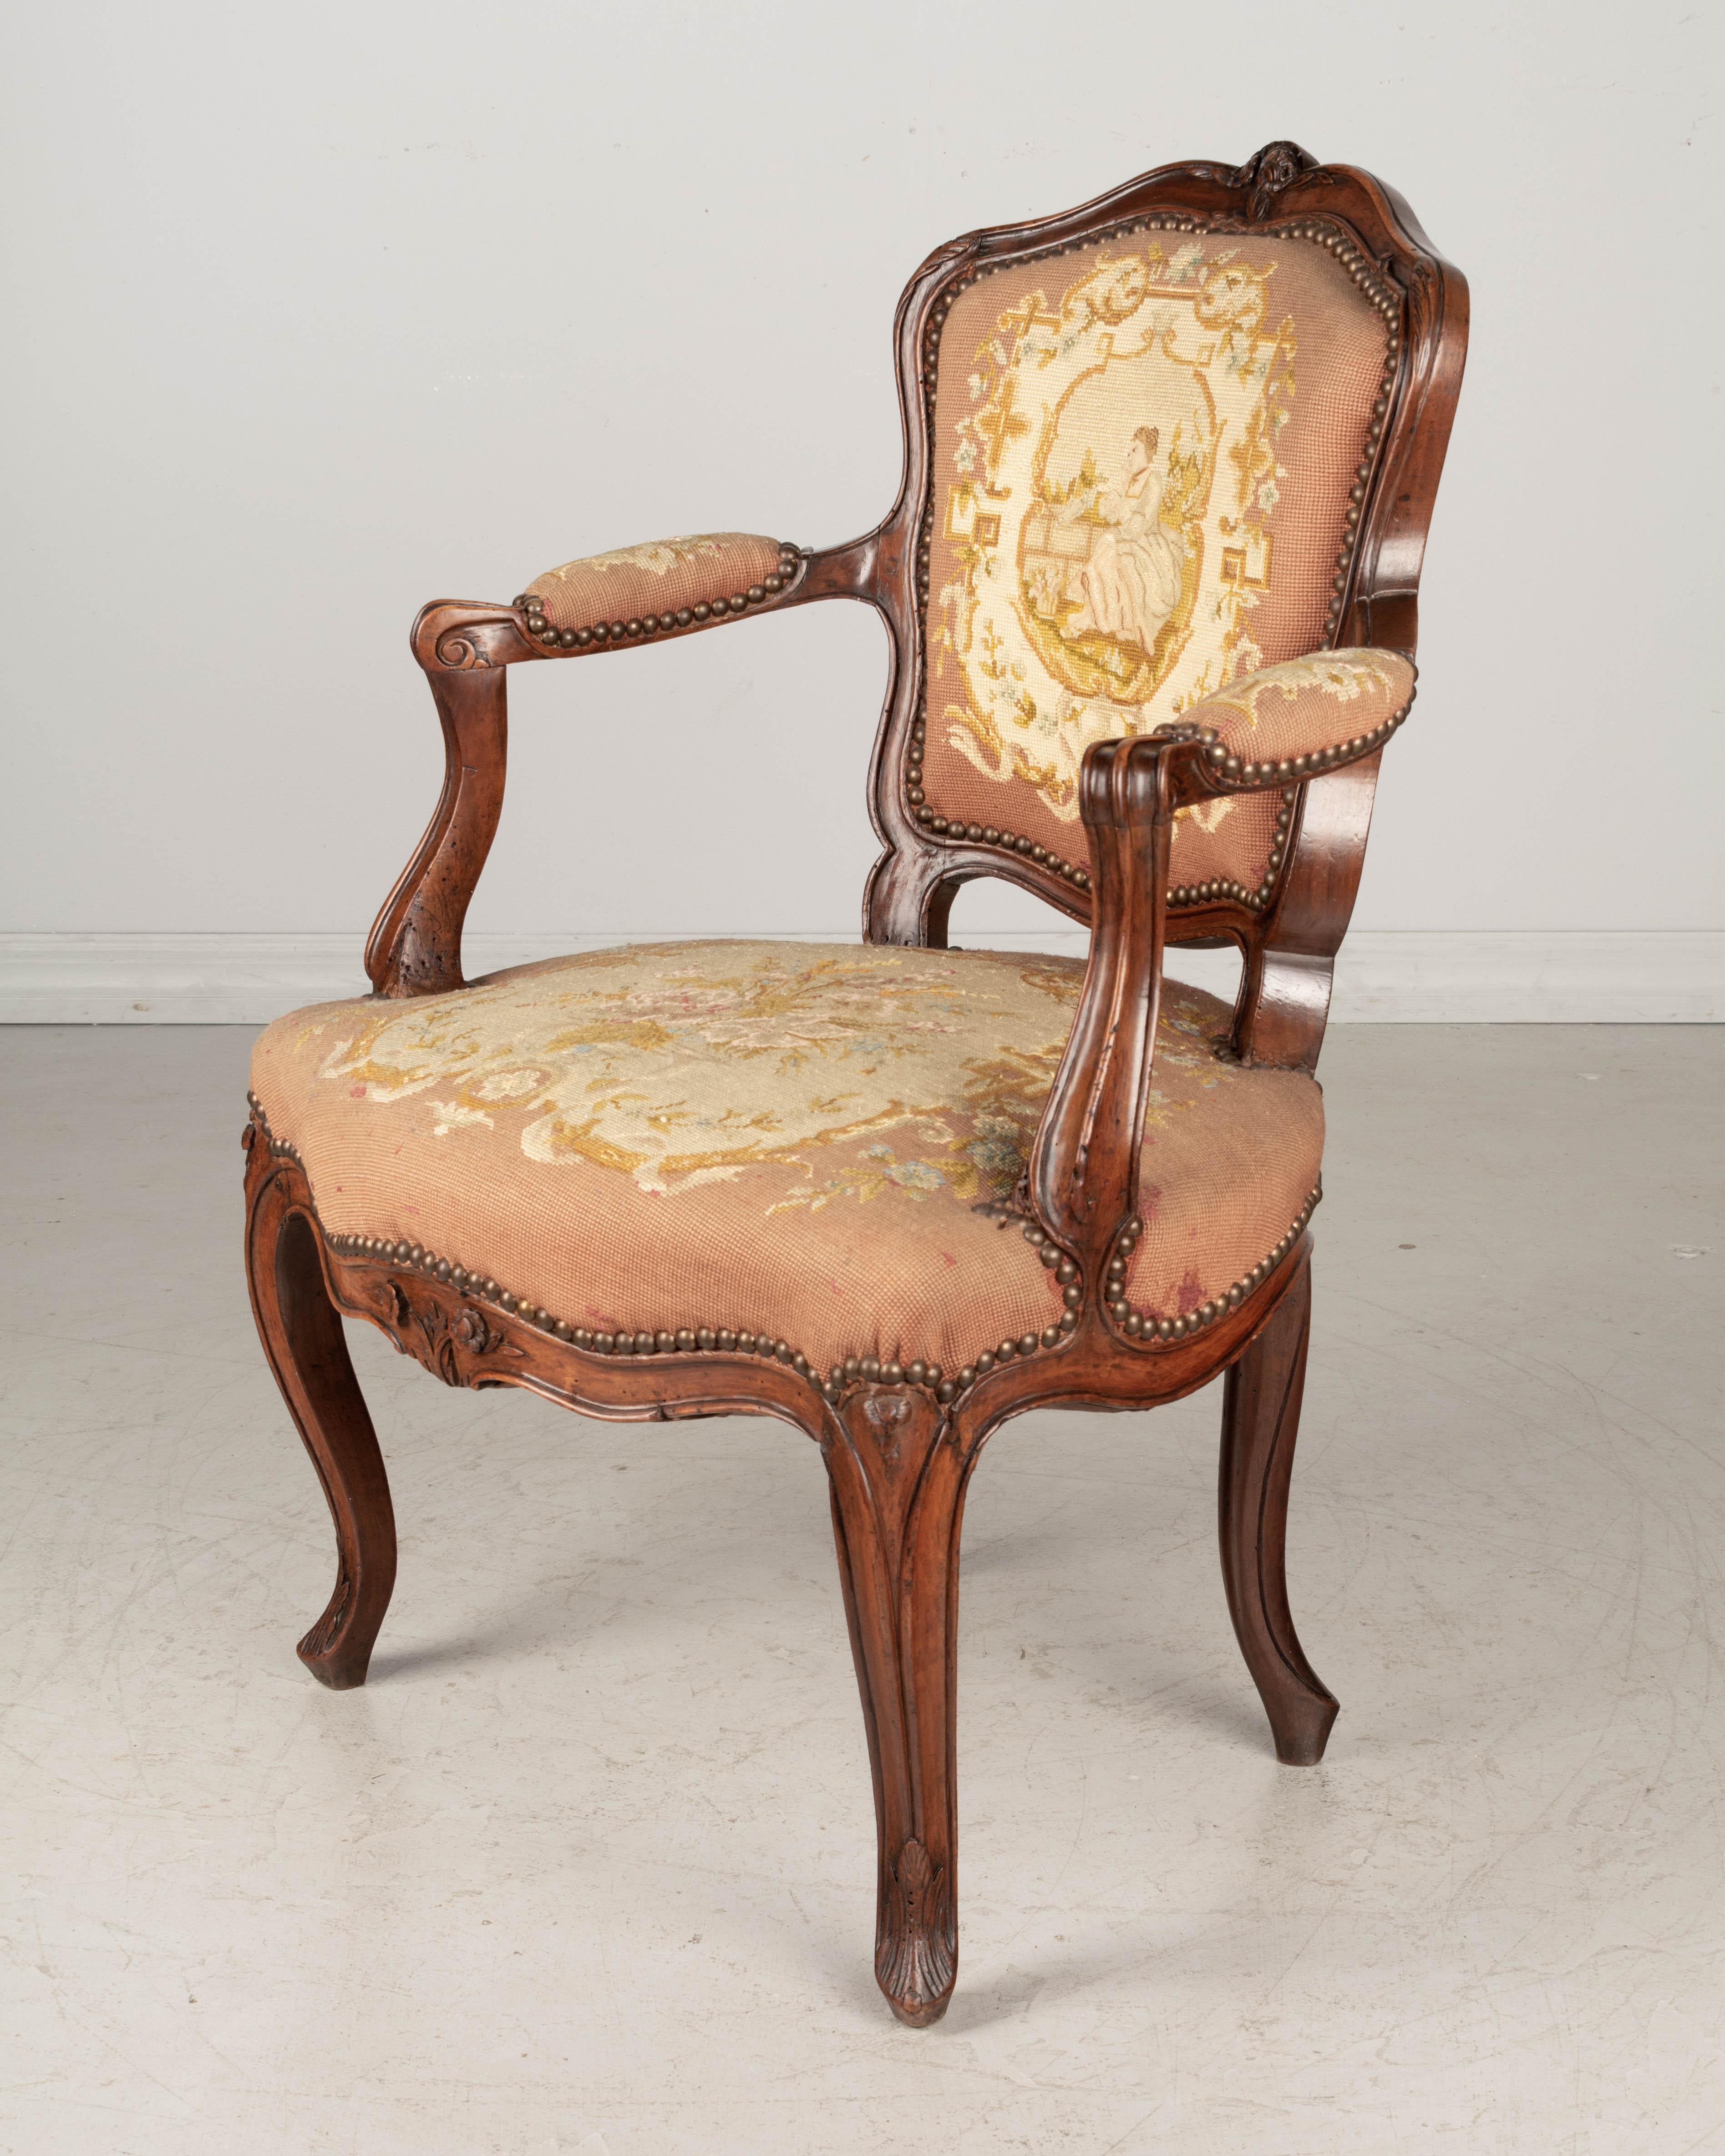 Ein kleiner französischer Fauteuil oder Sessel aus dem 18. Jahrhundert im Louis XV-Stil, mit stabilem Nussbaumrahmen und feiner handgeschnitzter Dekoration. Gepolstert mit Petit-Point-Gobelin aus dem 19. Abgesteckte Konstruktion. Dieser Stuhl liegt